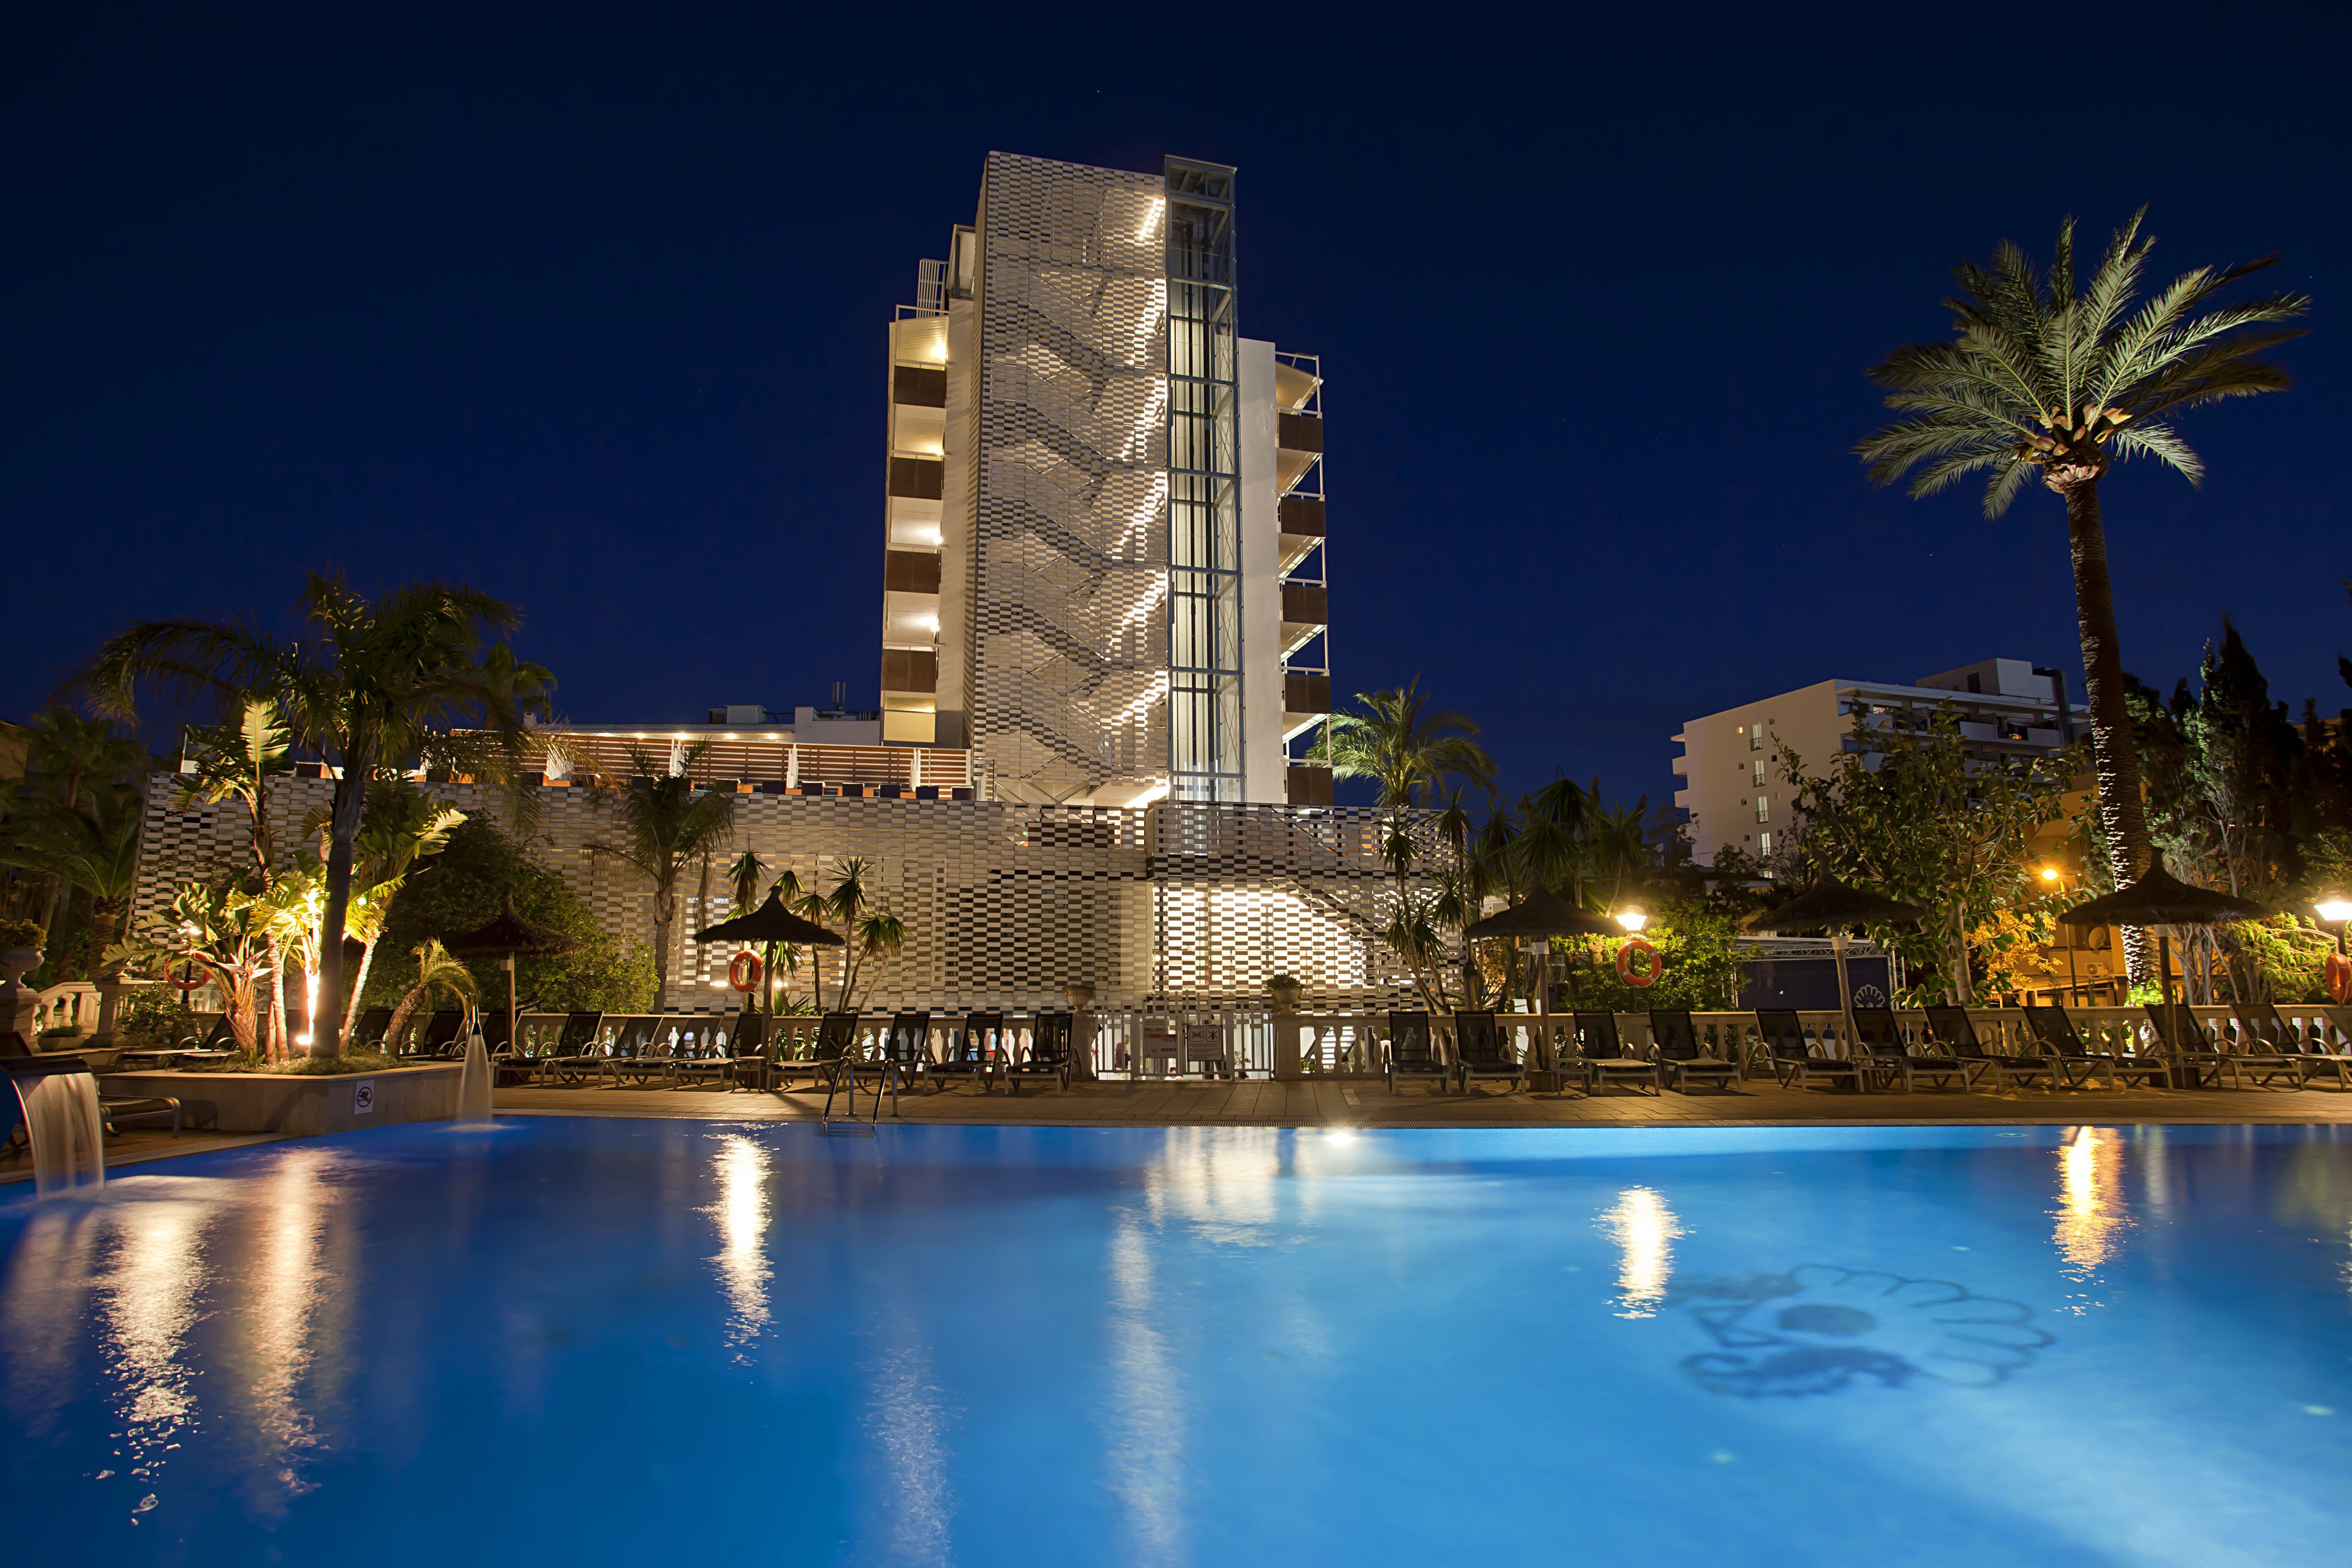 instalaciones piscina hotel bahia de alcudia